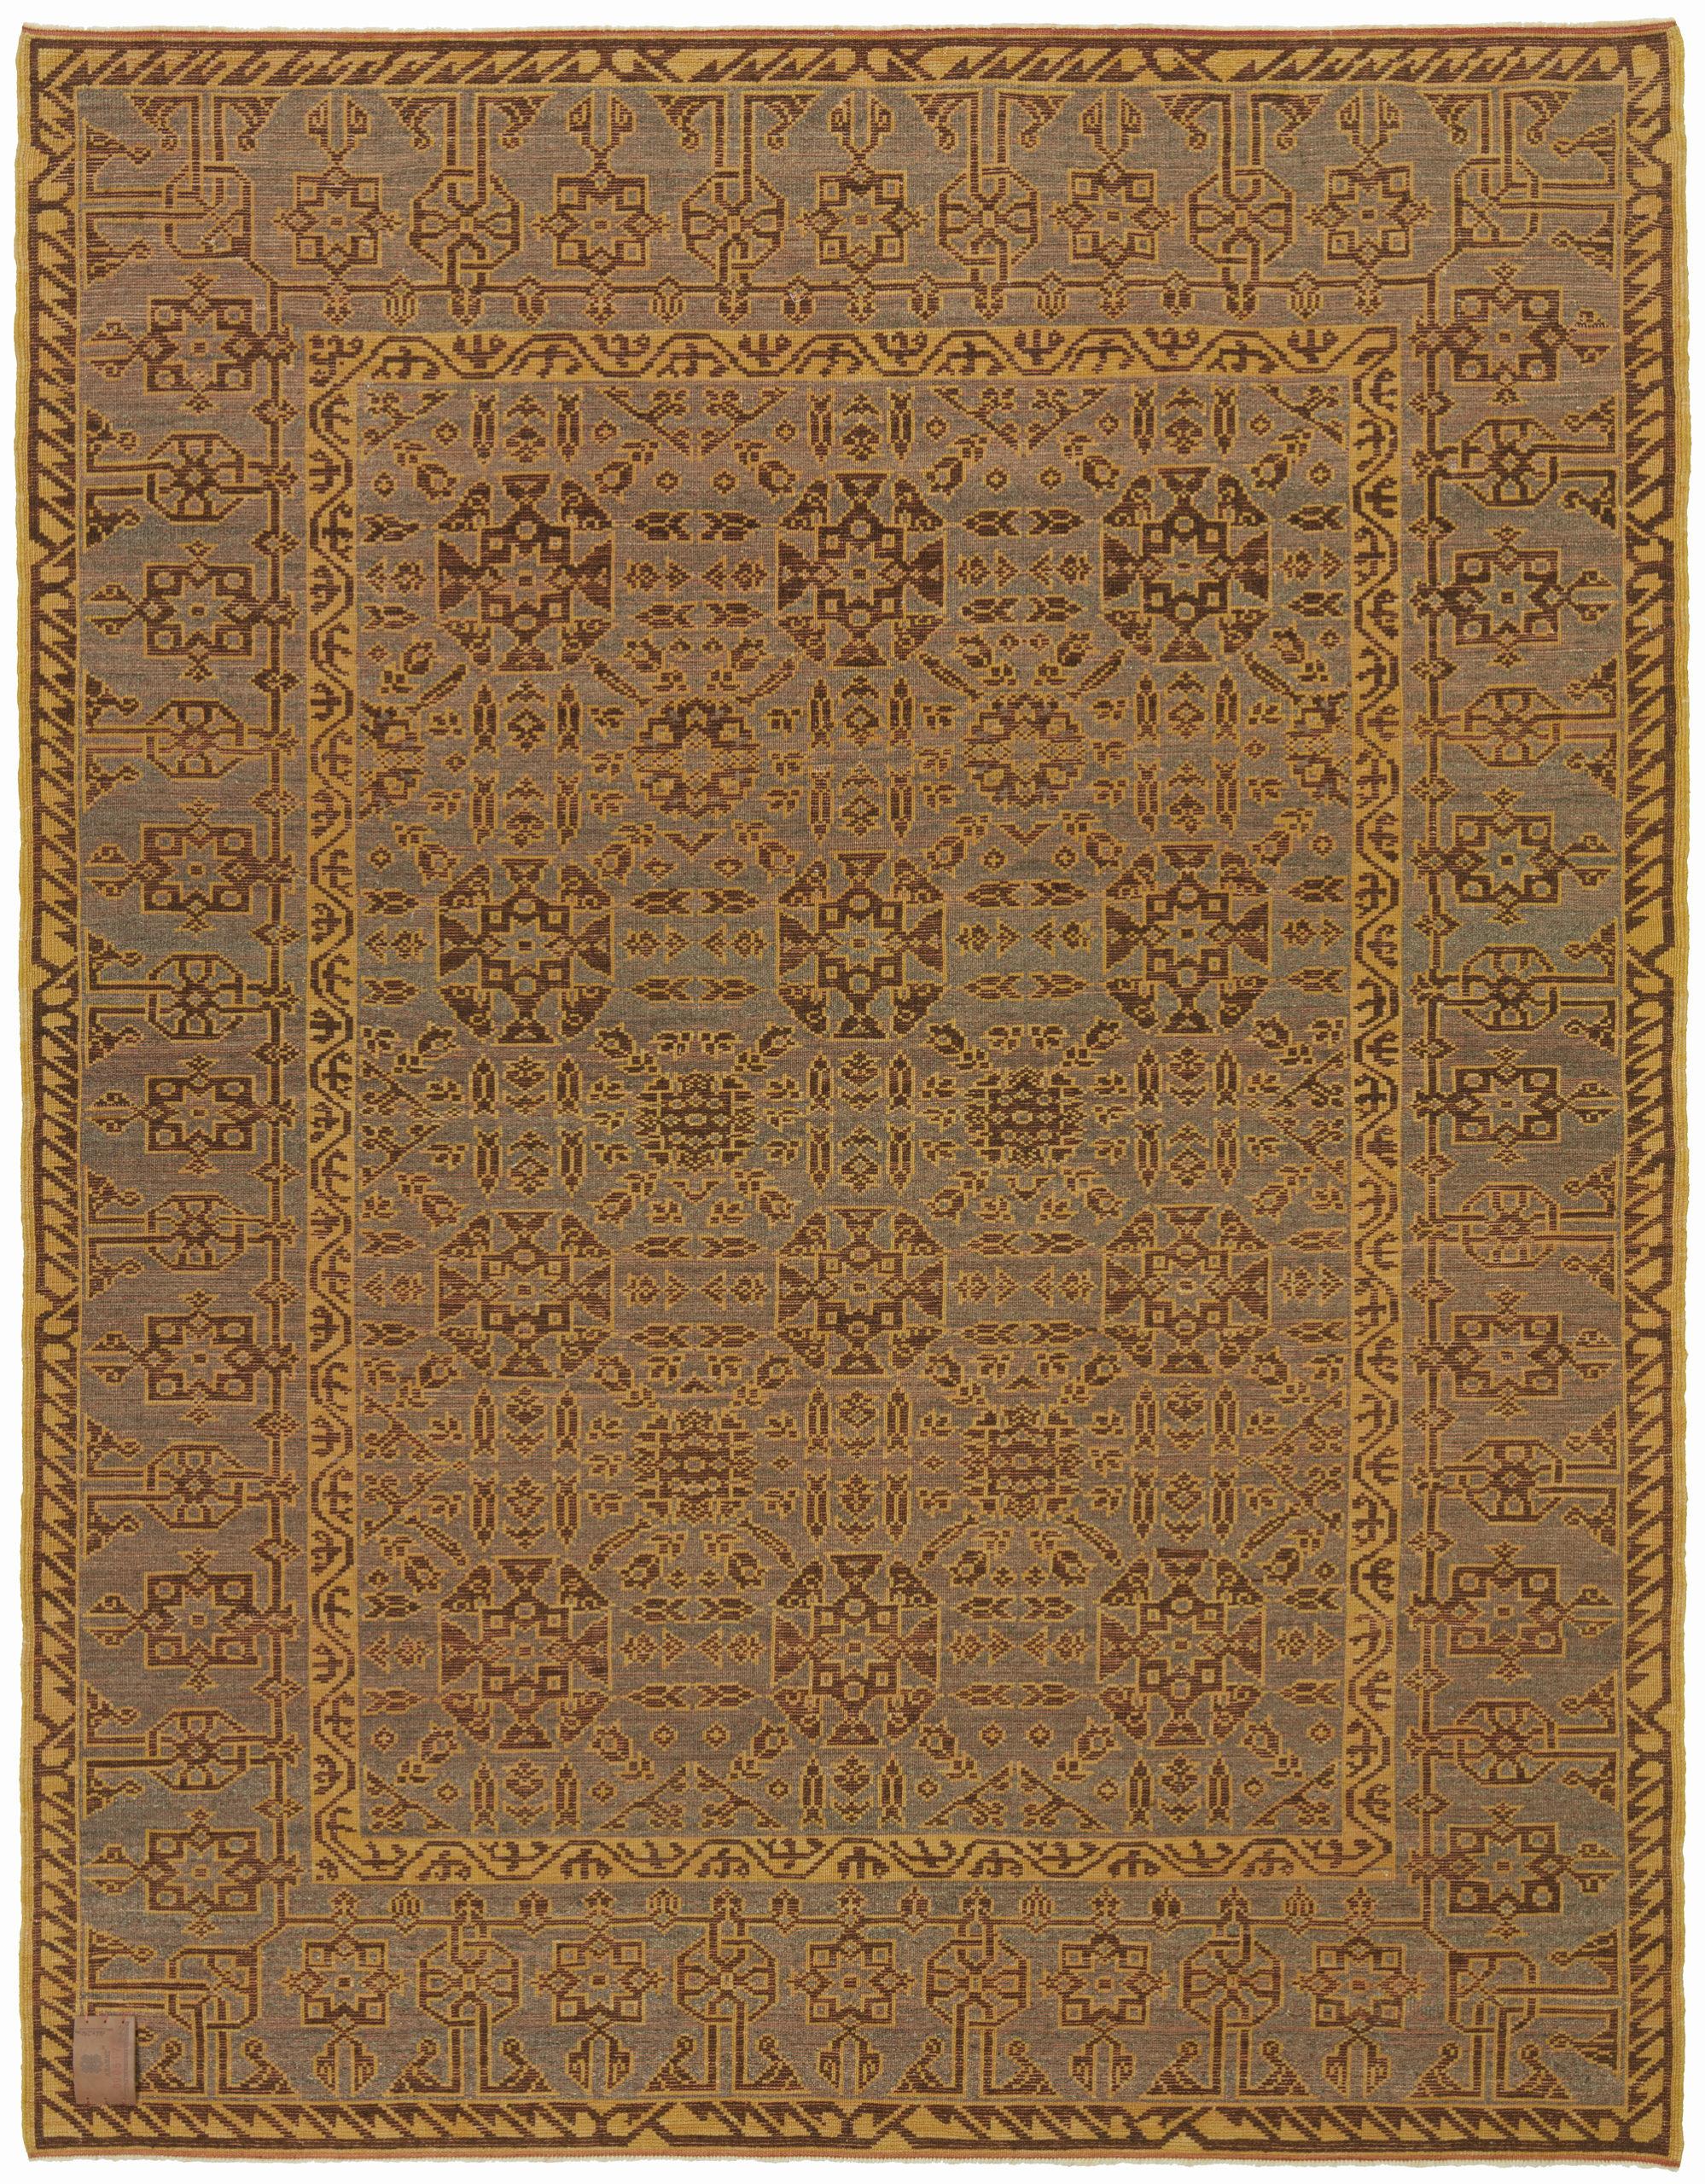 Die Designquelle des Teppichs stammt aus dem Buch Turkish Carpets from the 13th - 18th centuries, Ahmet Ertuğ, 1996 pl.9. Dieser Teppich aus dem 13. Jahrhundert stammt aus der Ulu-Moschee in der Region Divrigi Sivas, Zentralanatolien. Die